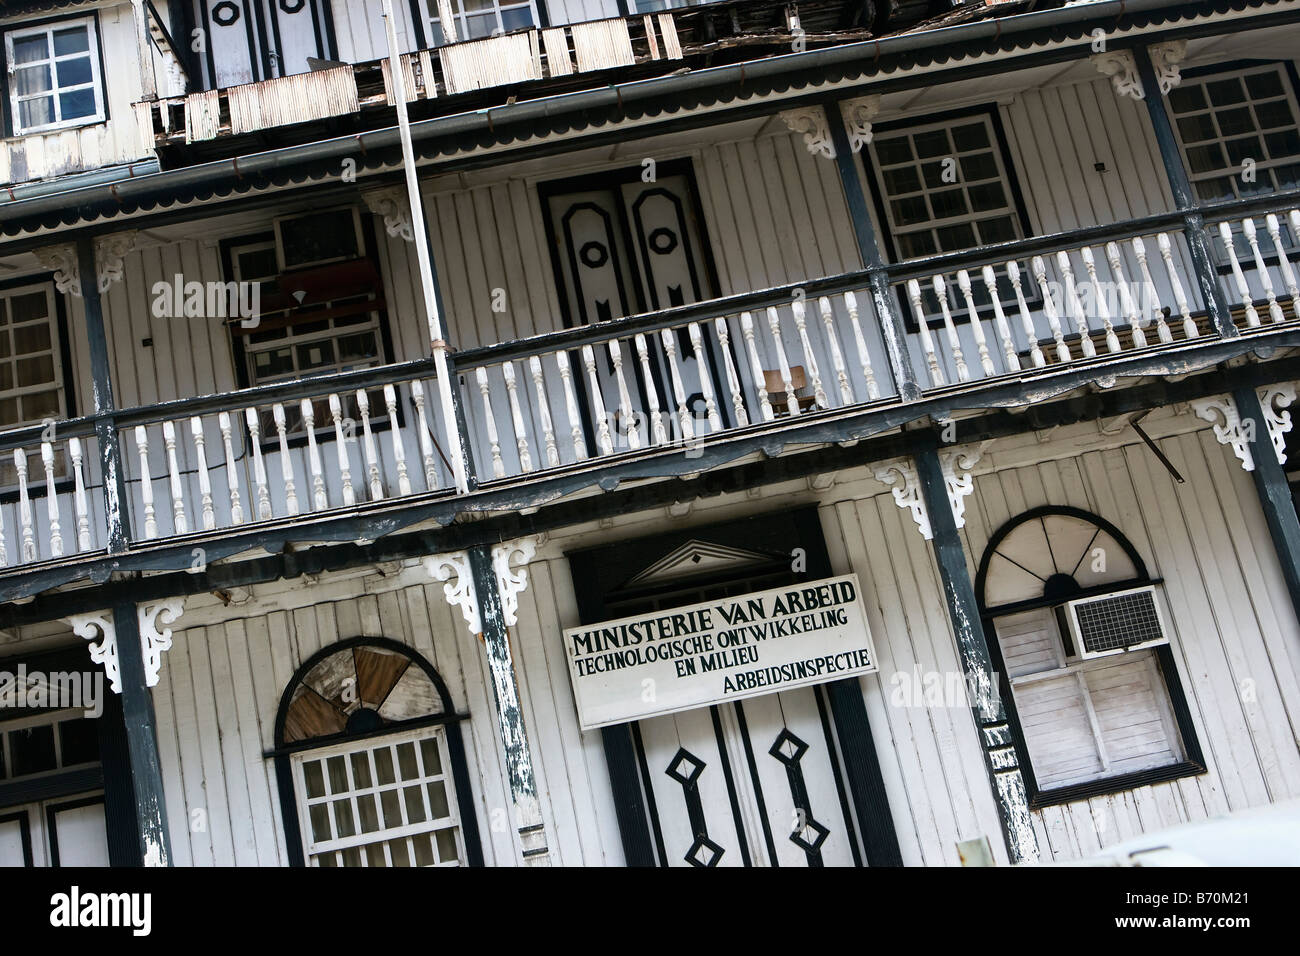 Suriname, Paramaribo, altes Holzhaus in der historischen Innenstadt. Jetzt Ministerium für Arbeit. Stockfoto